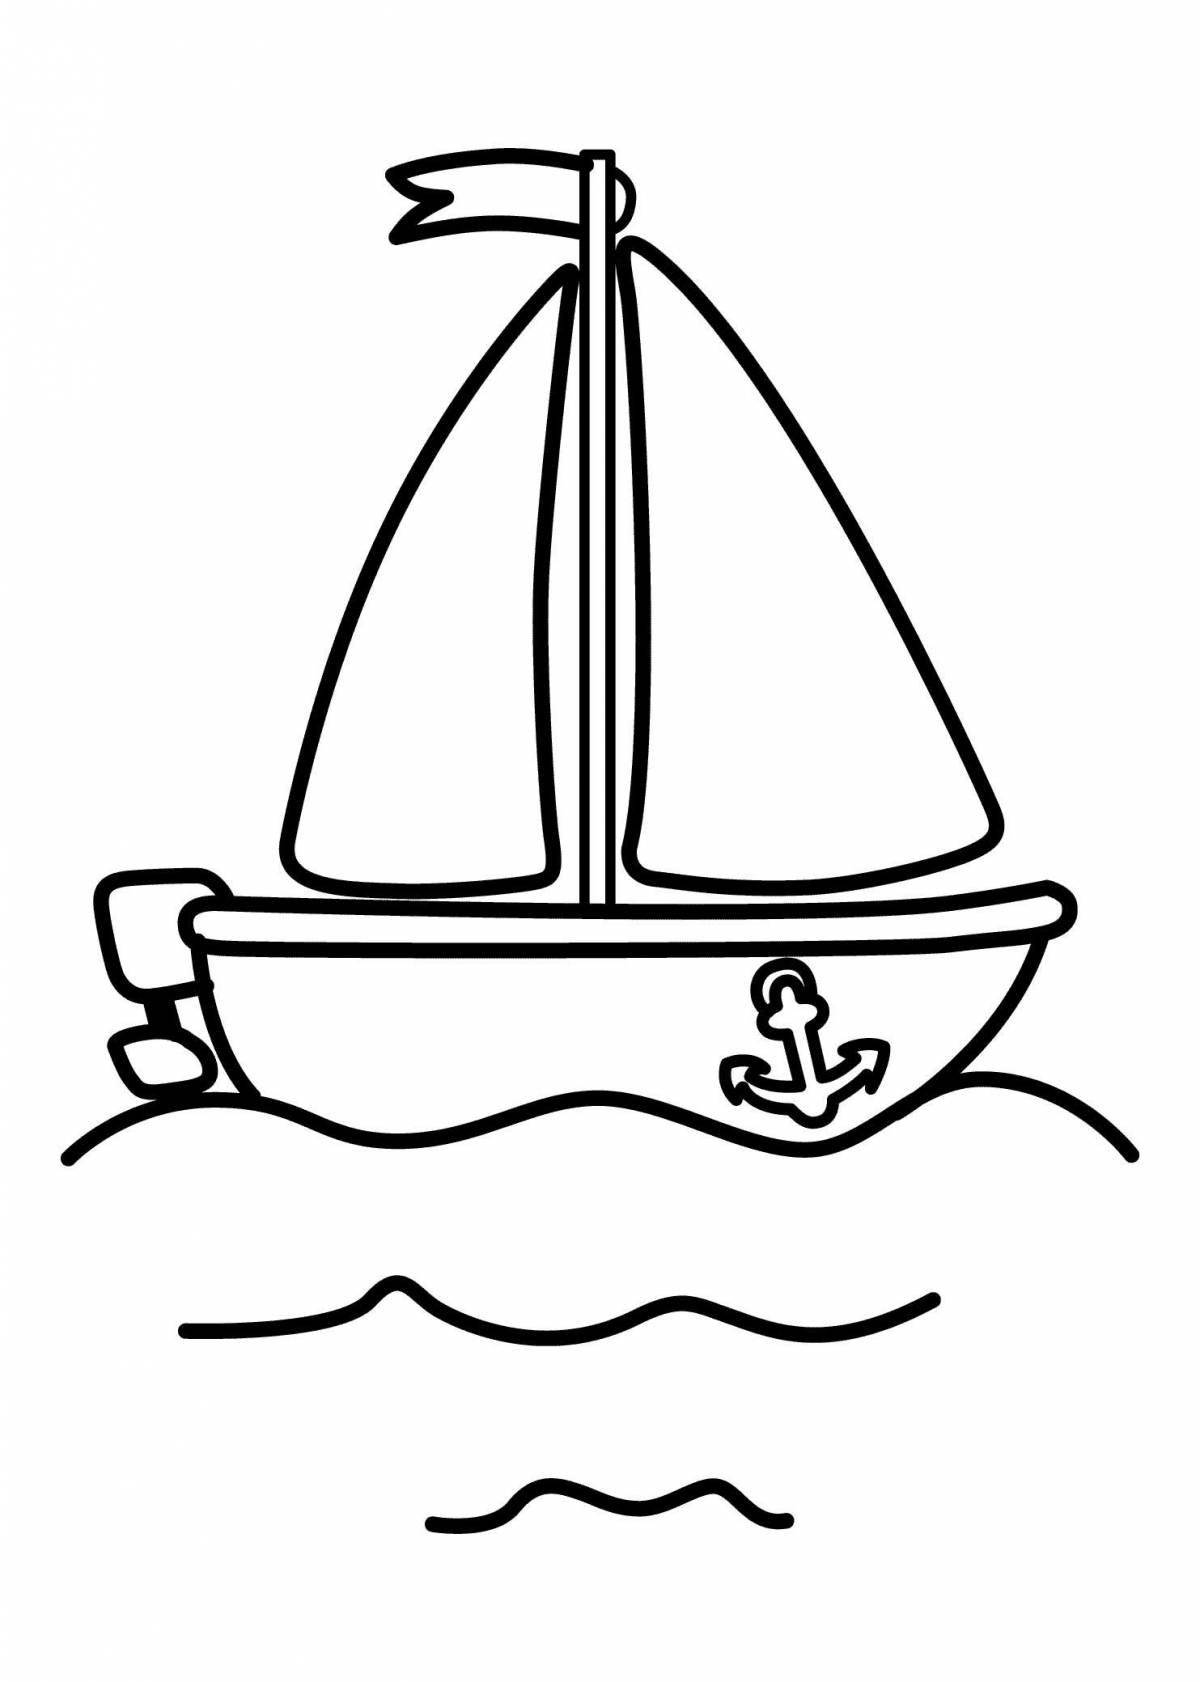 Развлекательная раскраска лодки для детей 2-3 лет